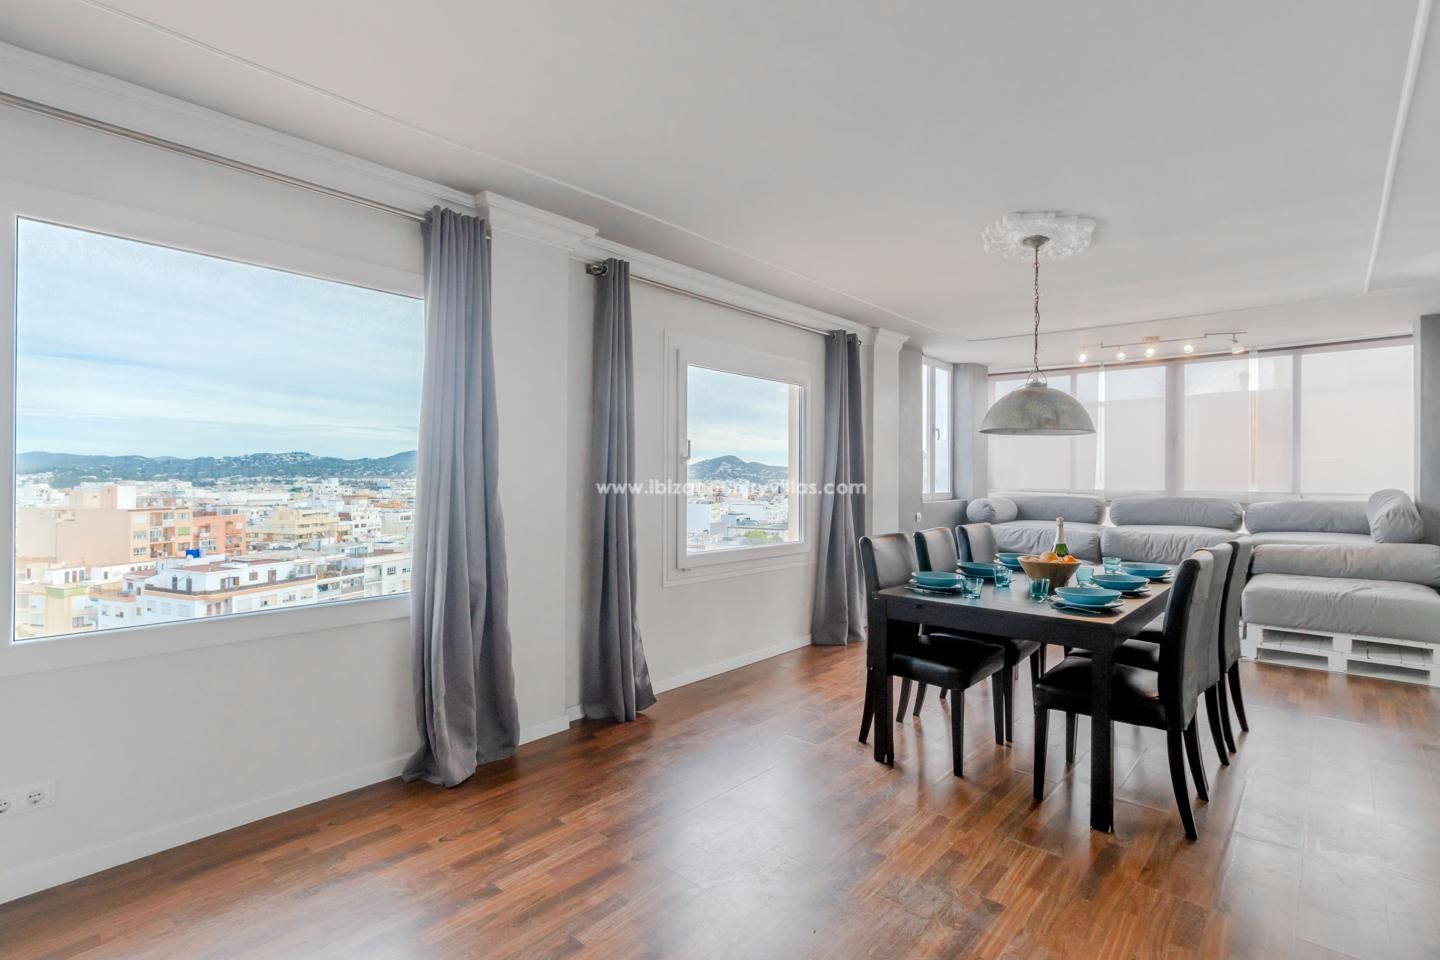 Apartamento de 3 dormitorios en Los Molinos con espectaculares vistas a la ciudad de Dalt Vila